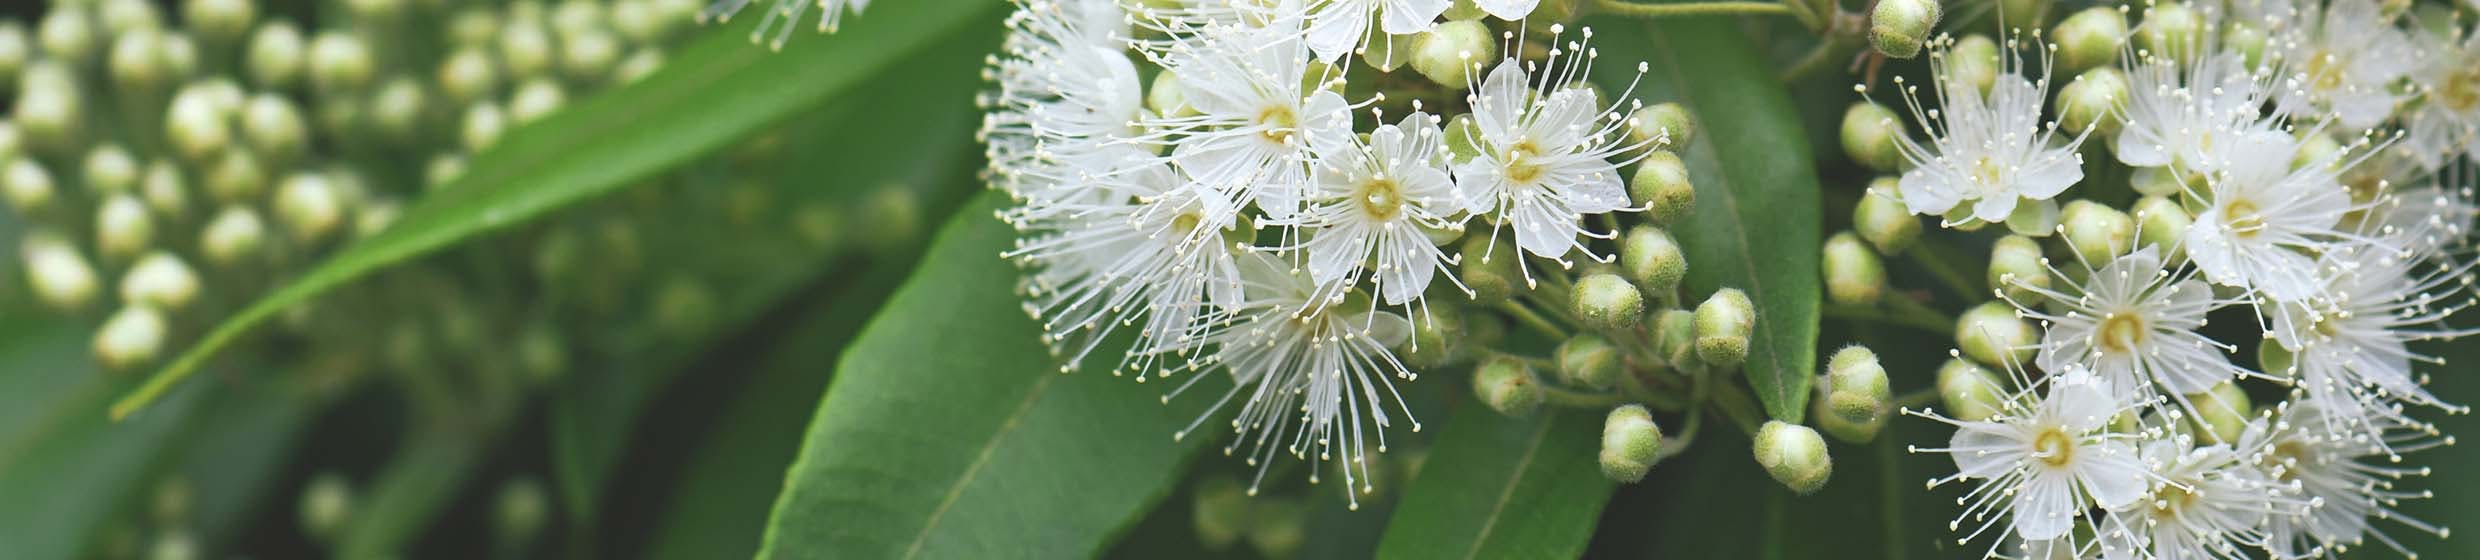 Eucalyptus citronné (citriodora)